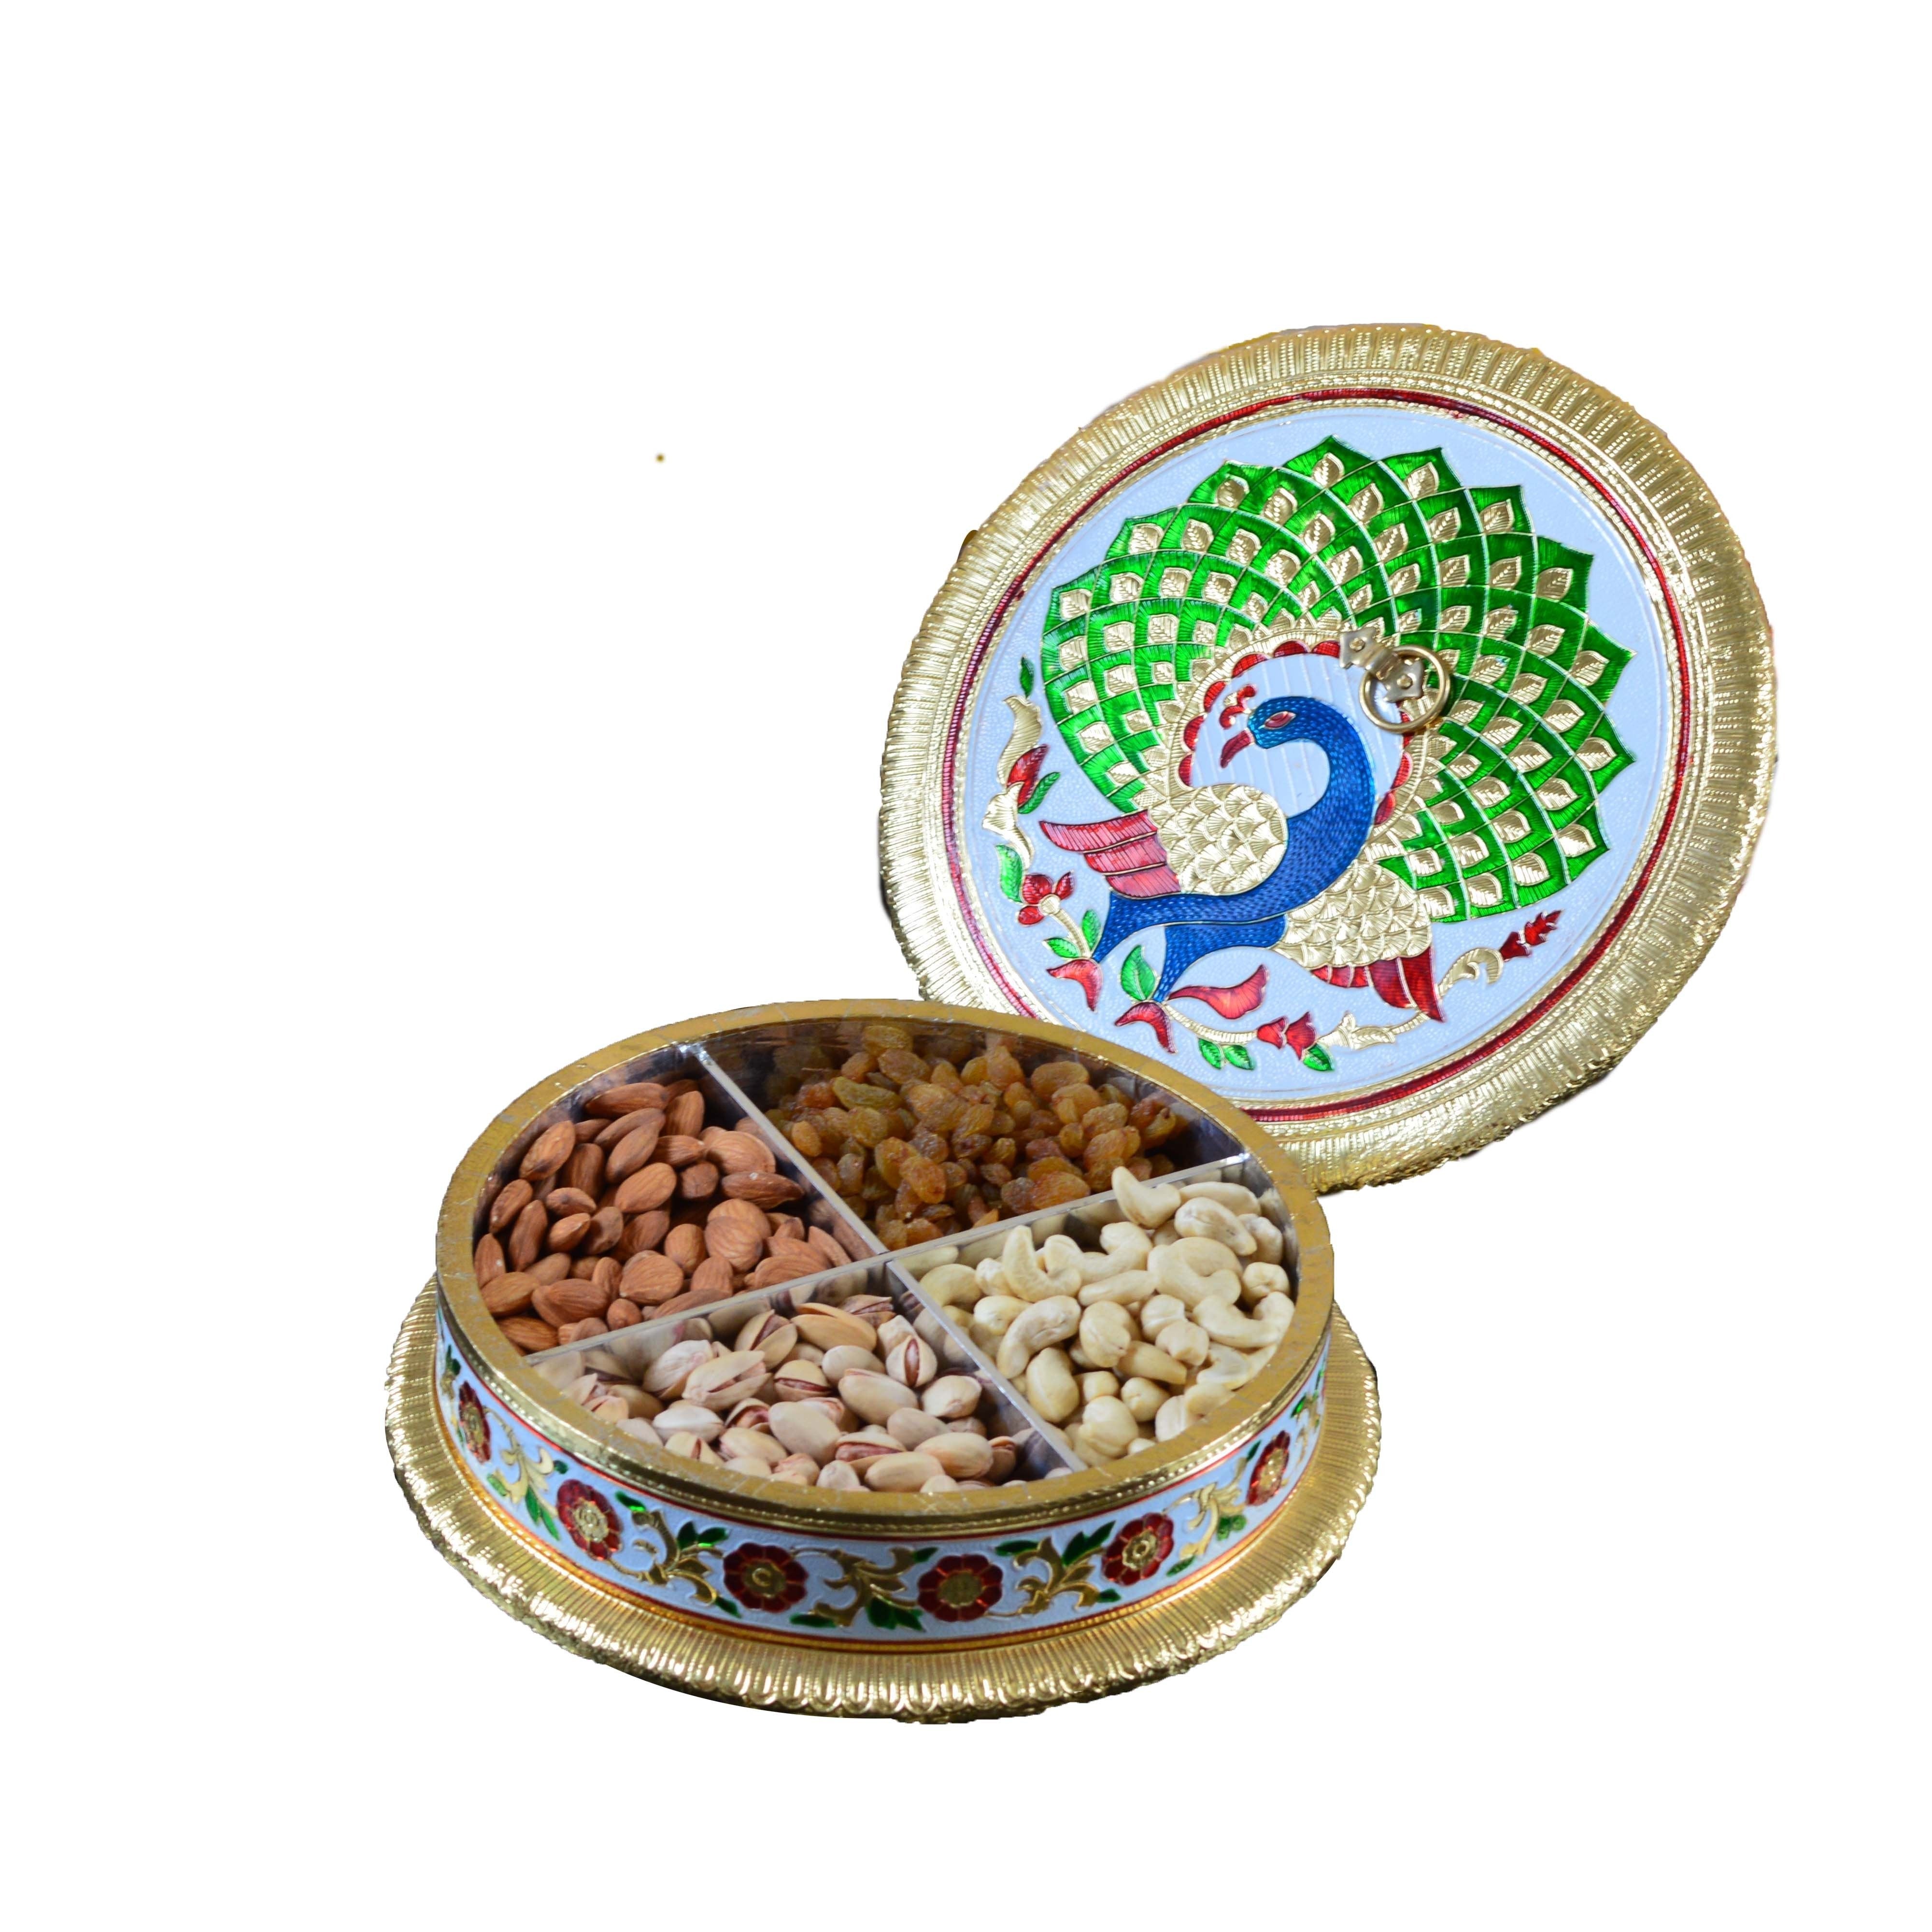 Meenakari Dry Fruit Container with Dancing Peacock